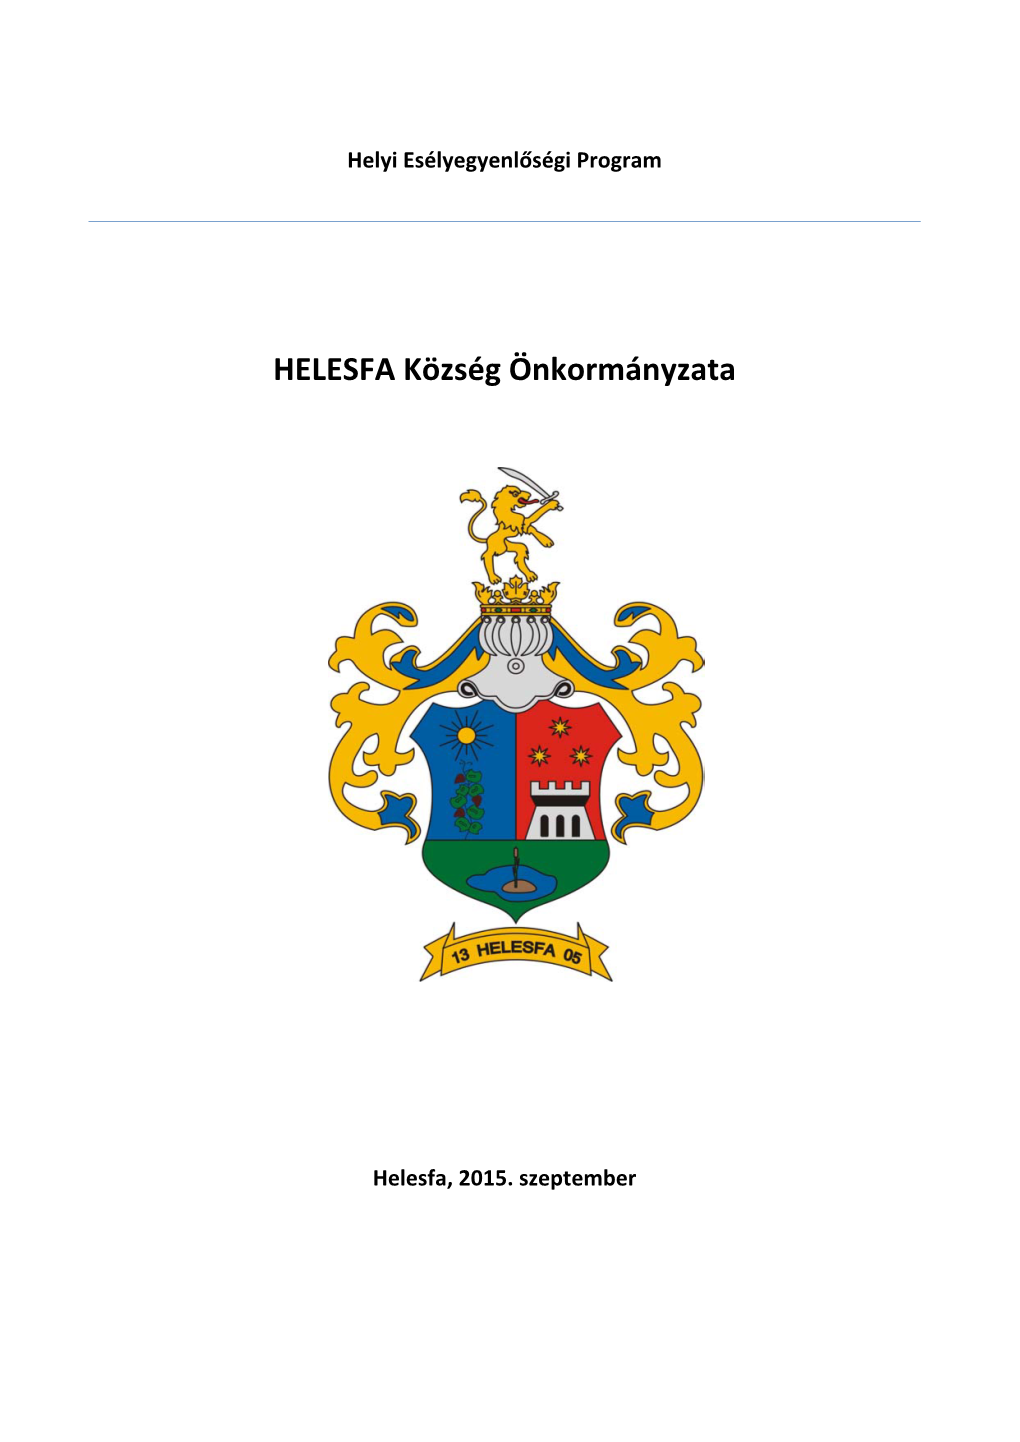 HELESFA Község Önkormányzata